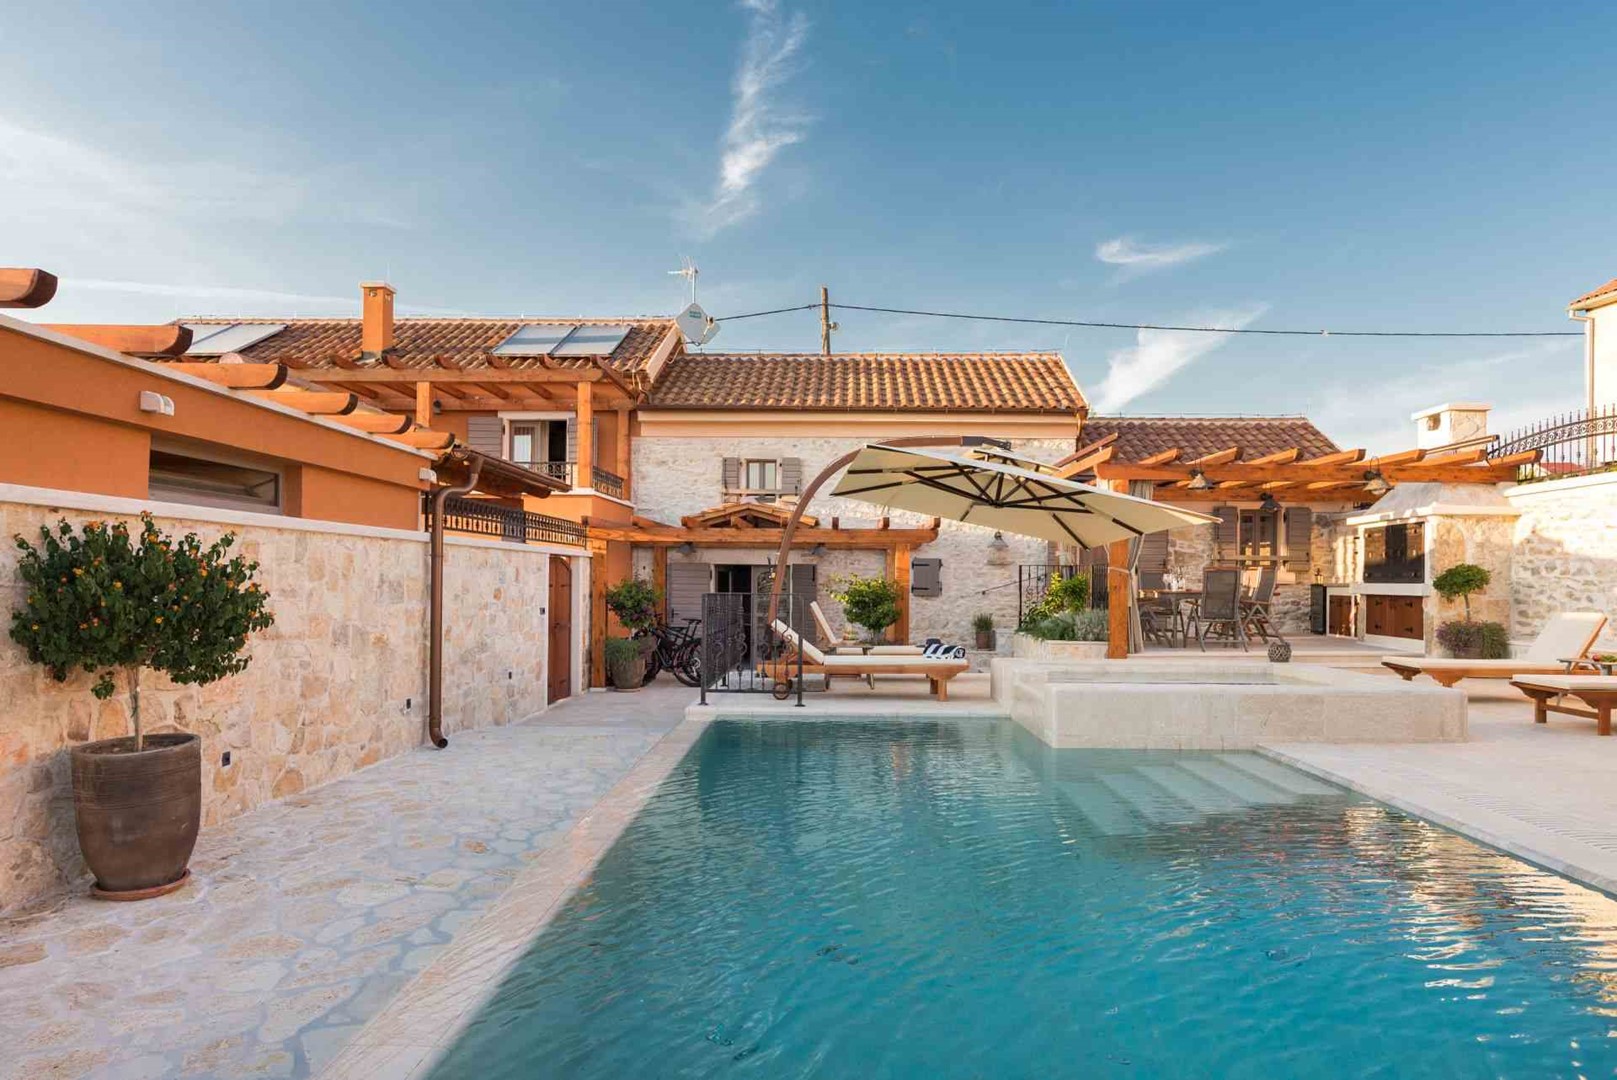 ŠIBENIK LUXURY VILLAS - Luxury Villa Finessa Skradin 2 with heated pool